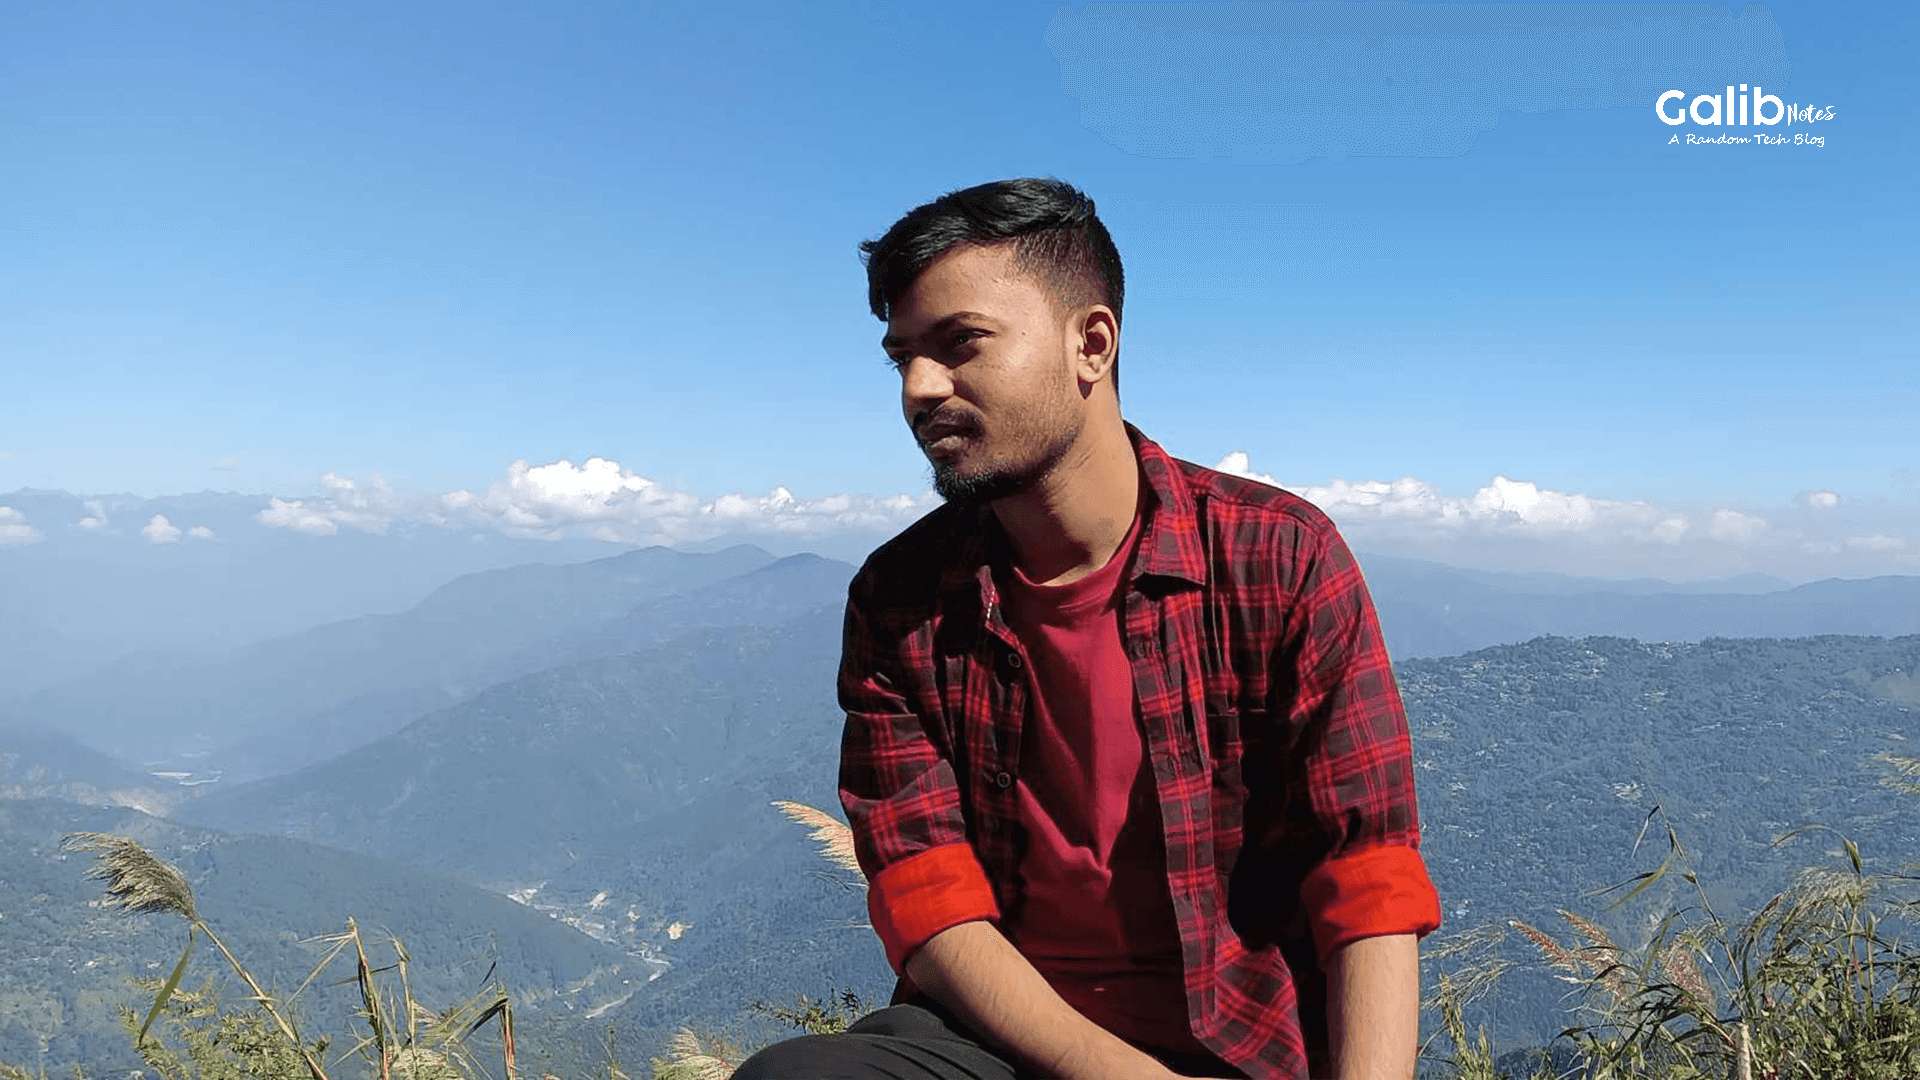 Galib, Darjeeling